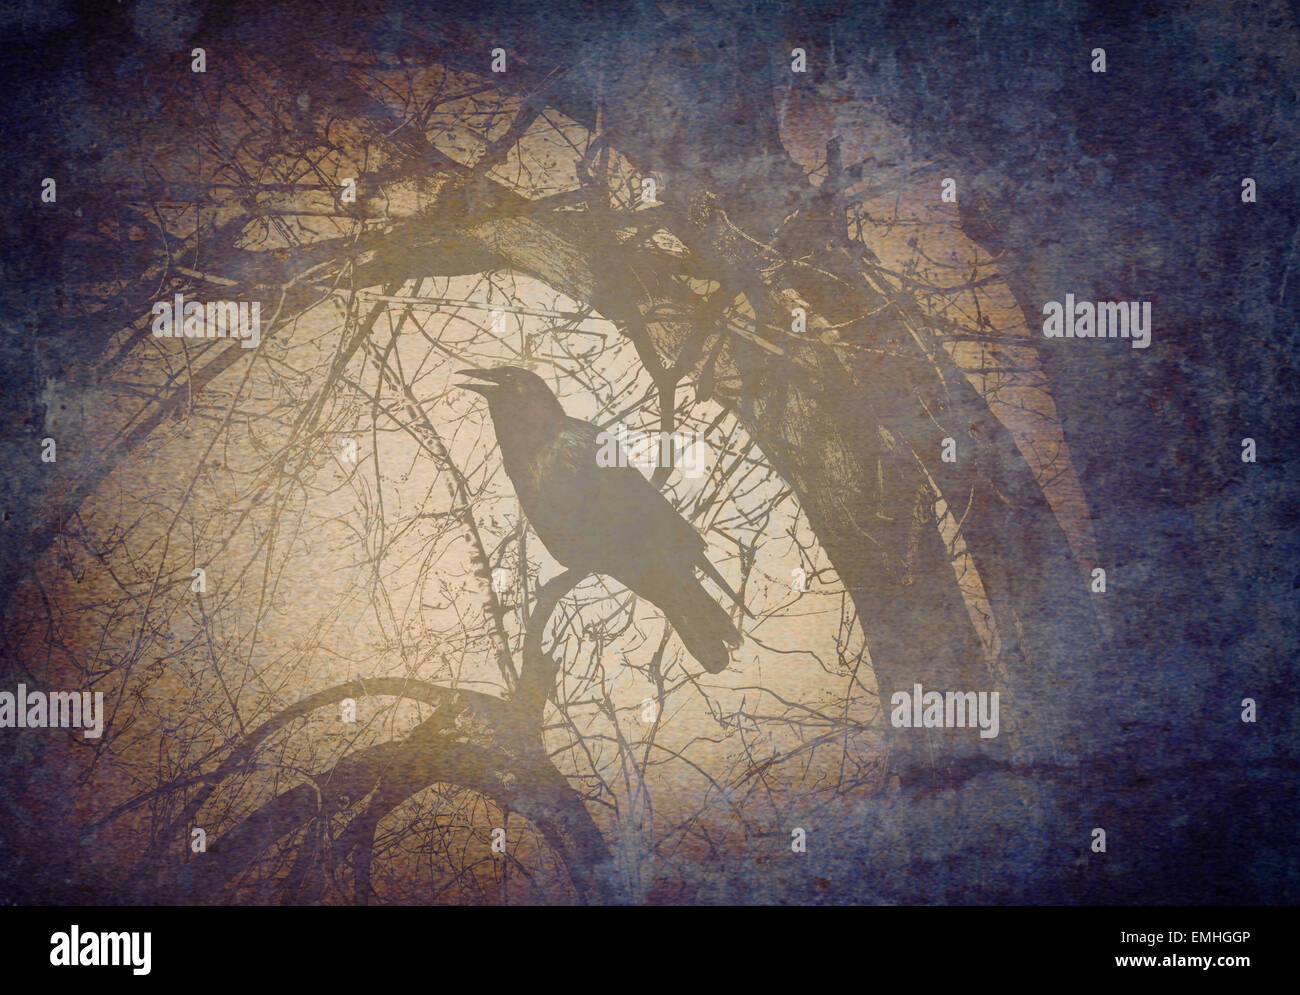 Gruselige Krähe auf einem Baum Filialkonzept aufrufen und Krähen in einem mystischen dunklen Zauberwald auf eine Grunge alte Vintage Hintergrundtextur als Symbol für Angst und Geheimnis. Stockfoto